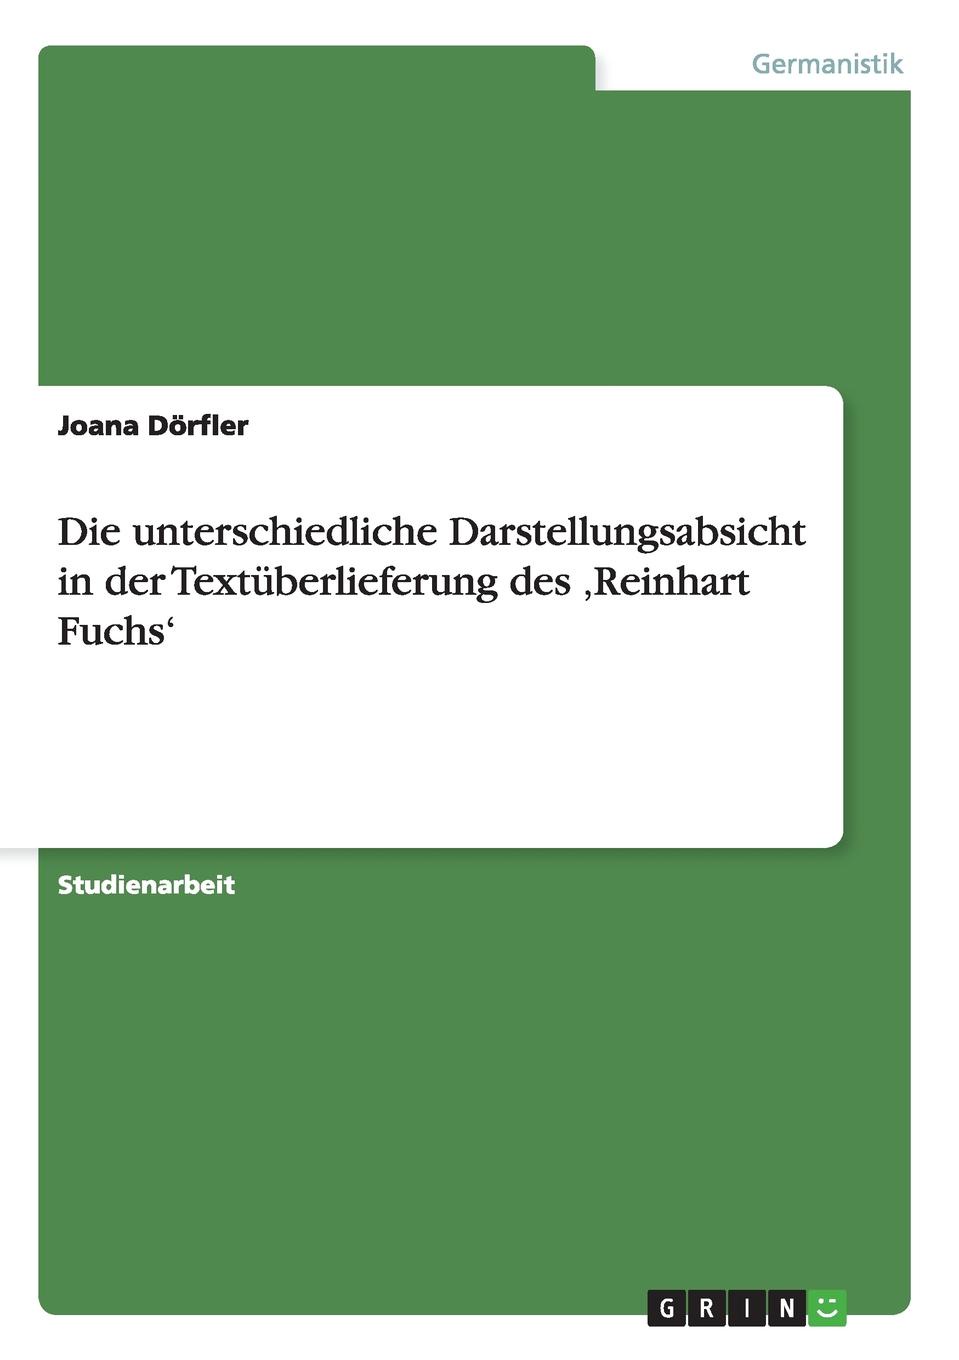 Joana Dörfler Die unterschiedliche Darstellungsabsicht in der Textuberlieferung des .Reinhart Fuchs.